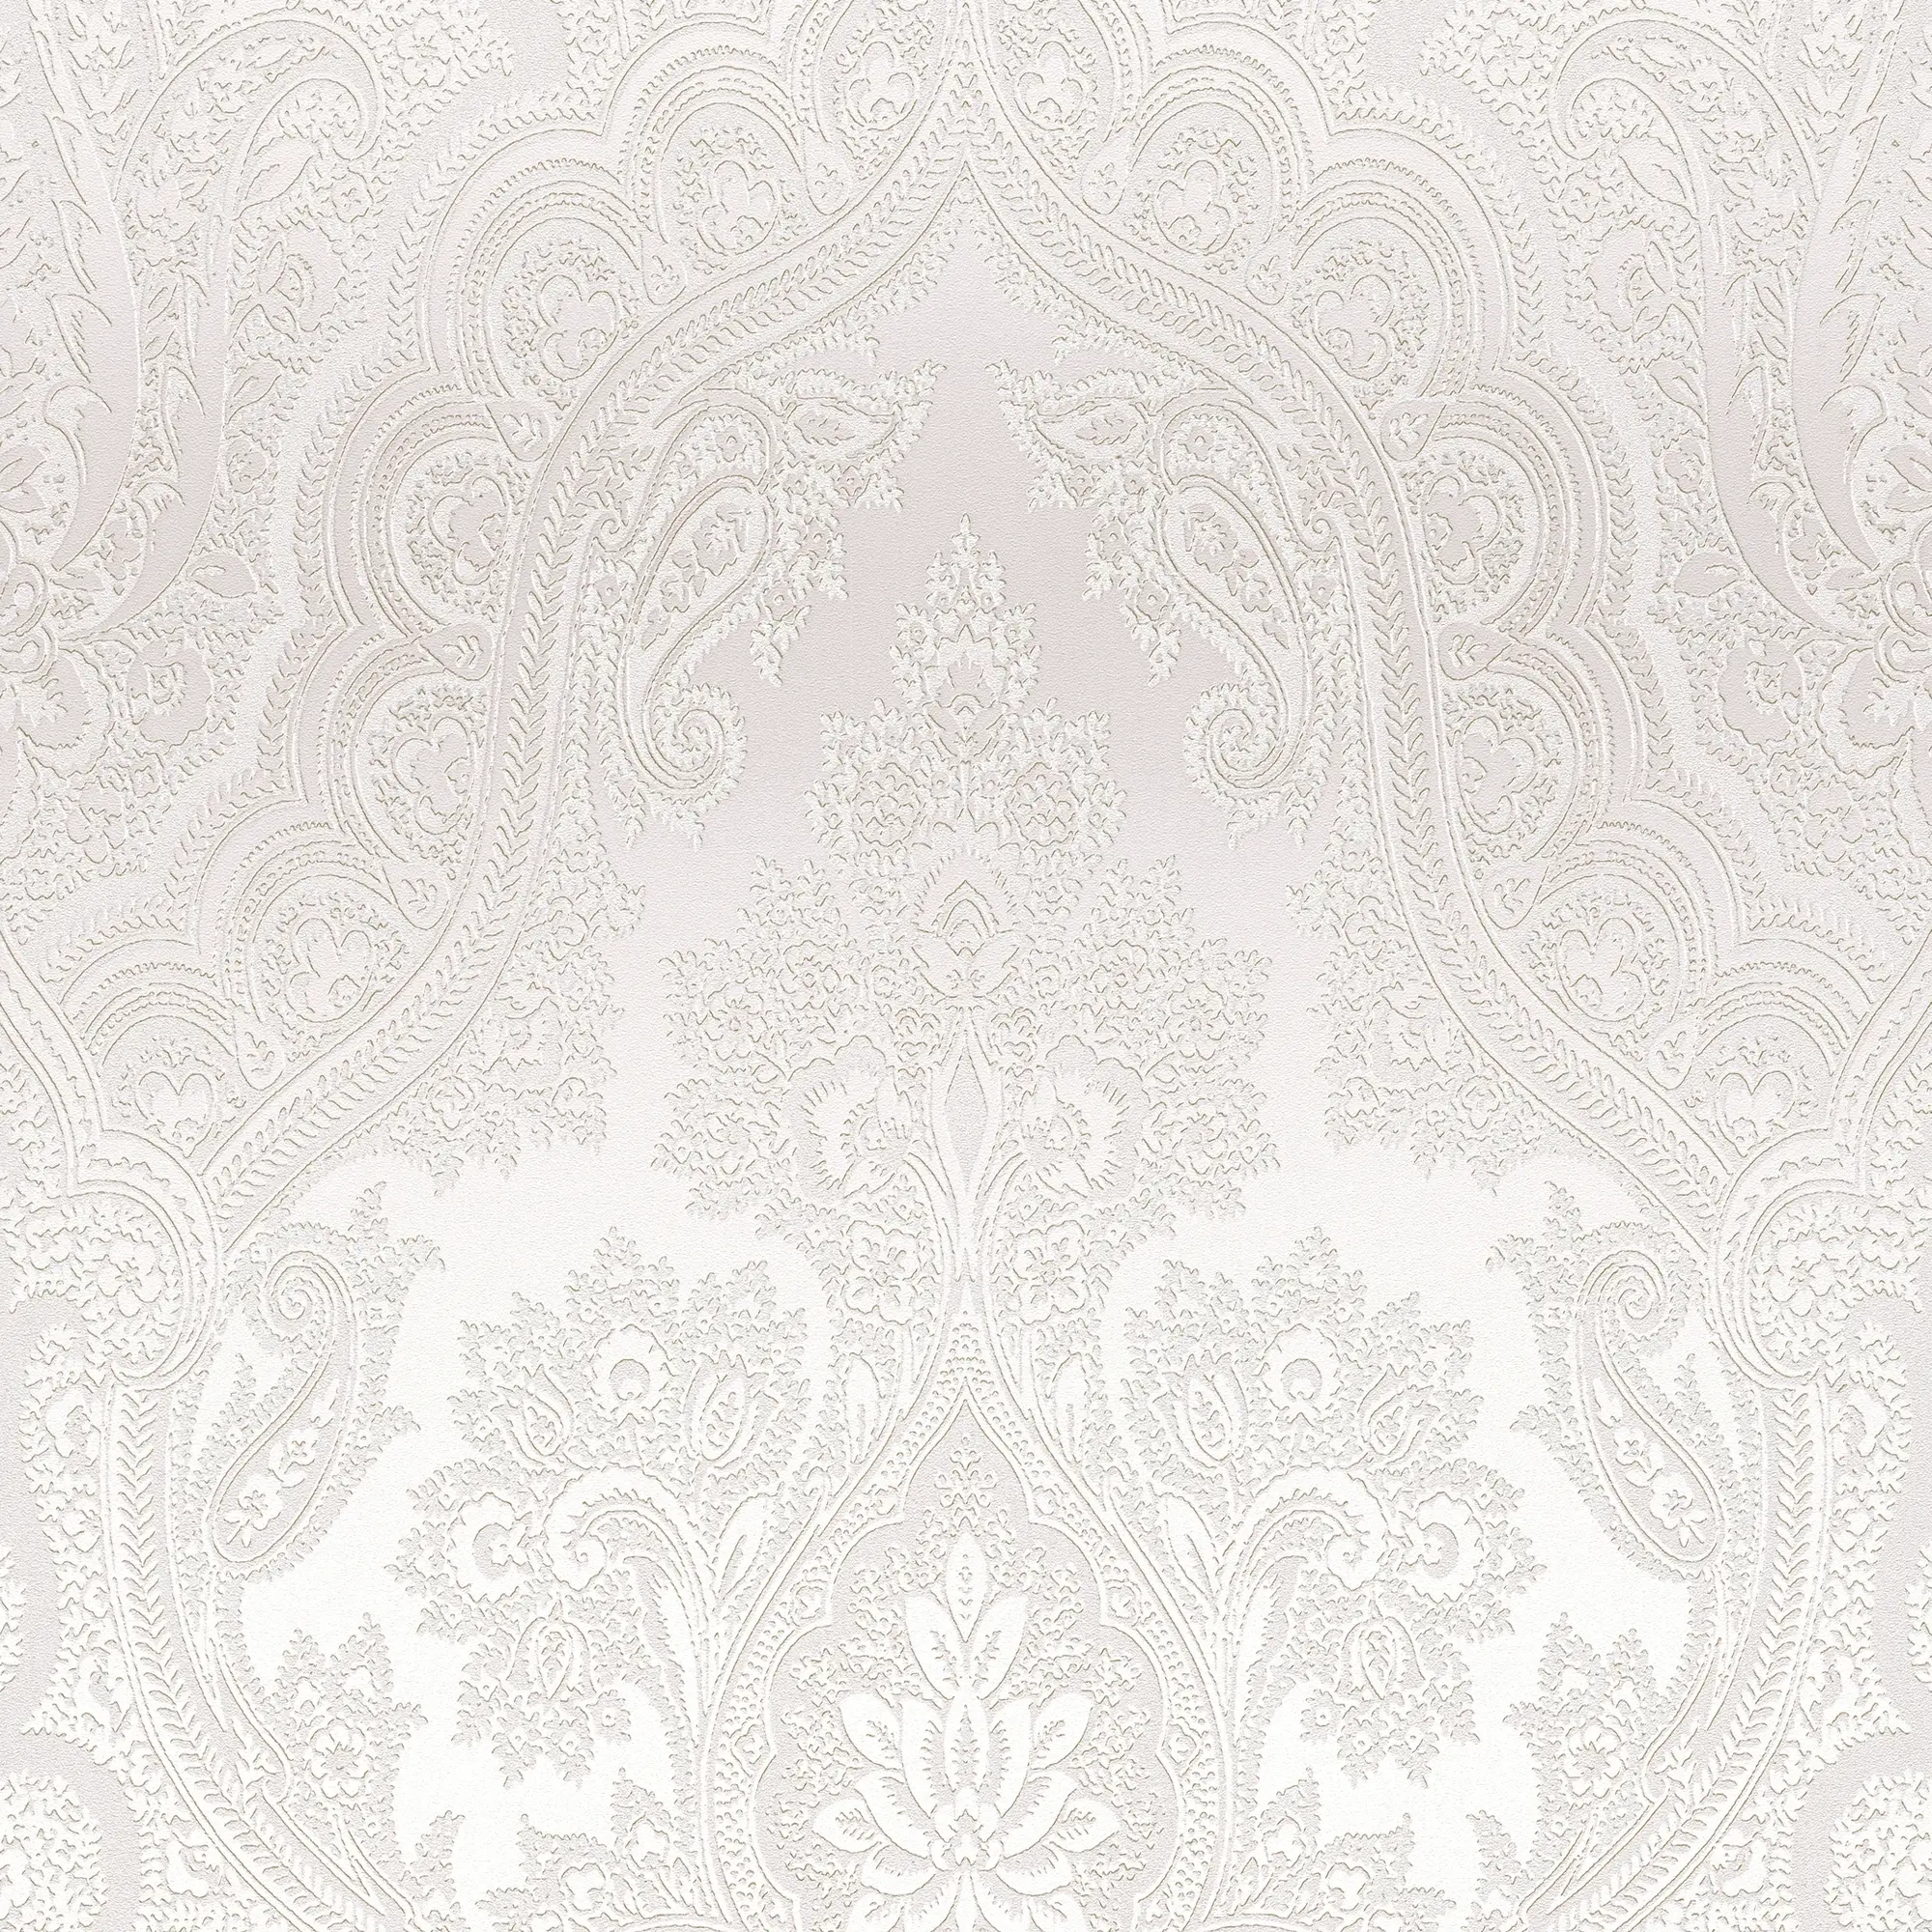 Ornament Tapete Gl盲nzend Silber Grau